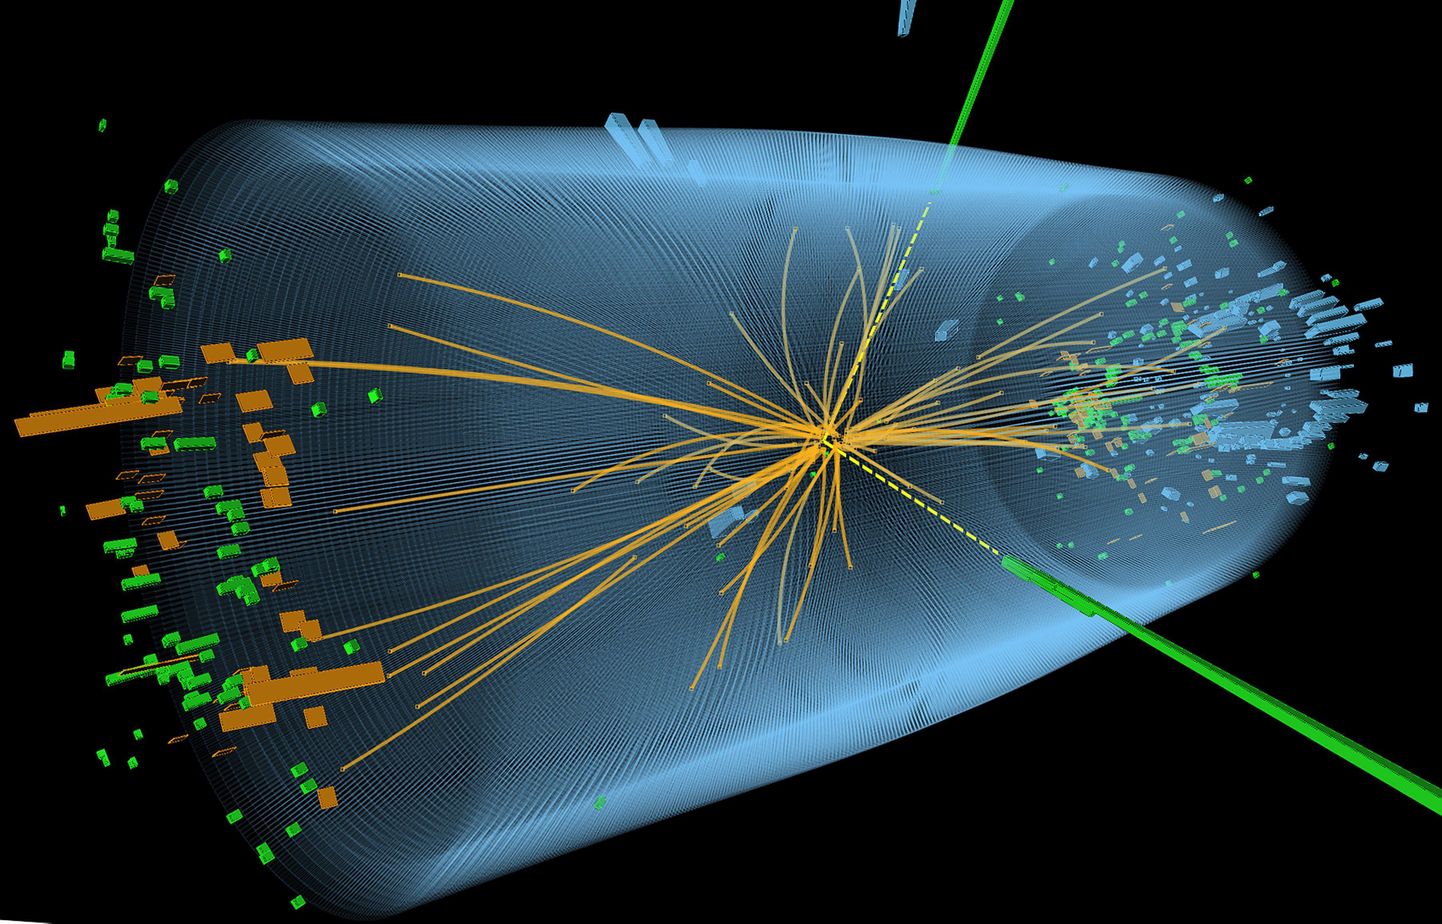 Higgsi bosoni andmetel põhjal valmis muusikapala. Pildil osakestepõrgutis toimunu, mis peaks tõendama Higgsi bosoni olemasolu